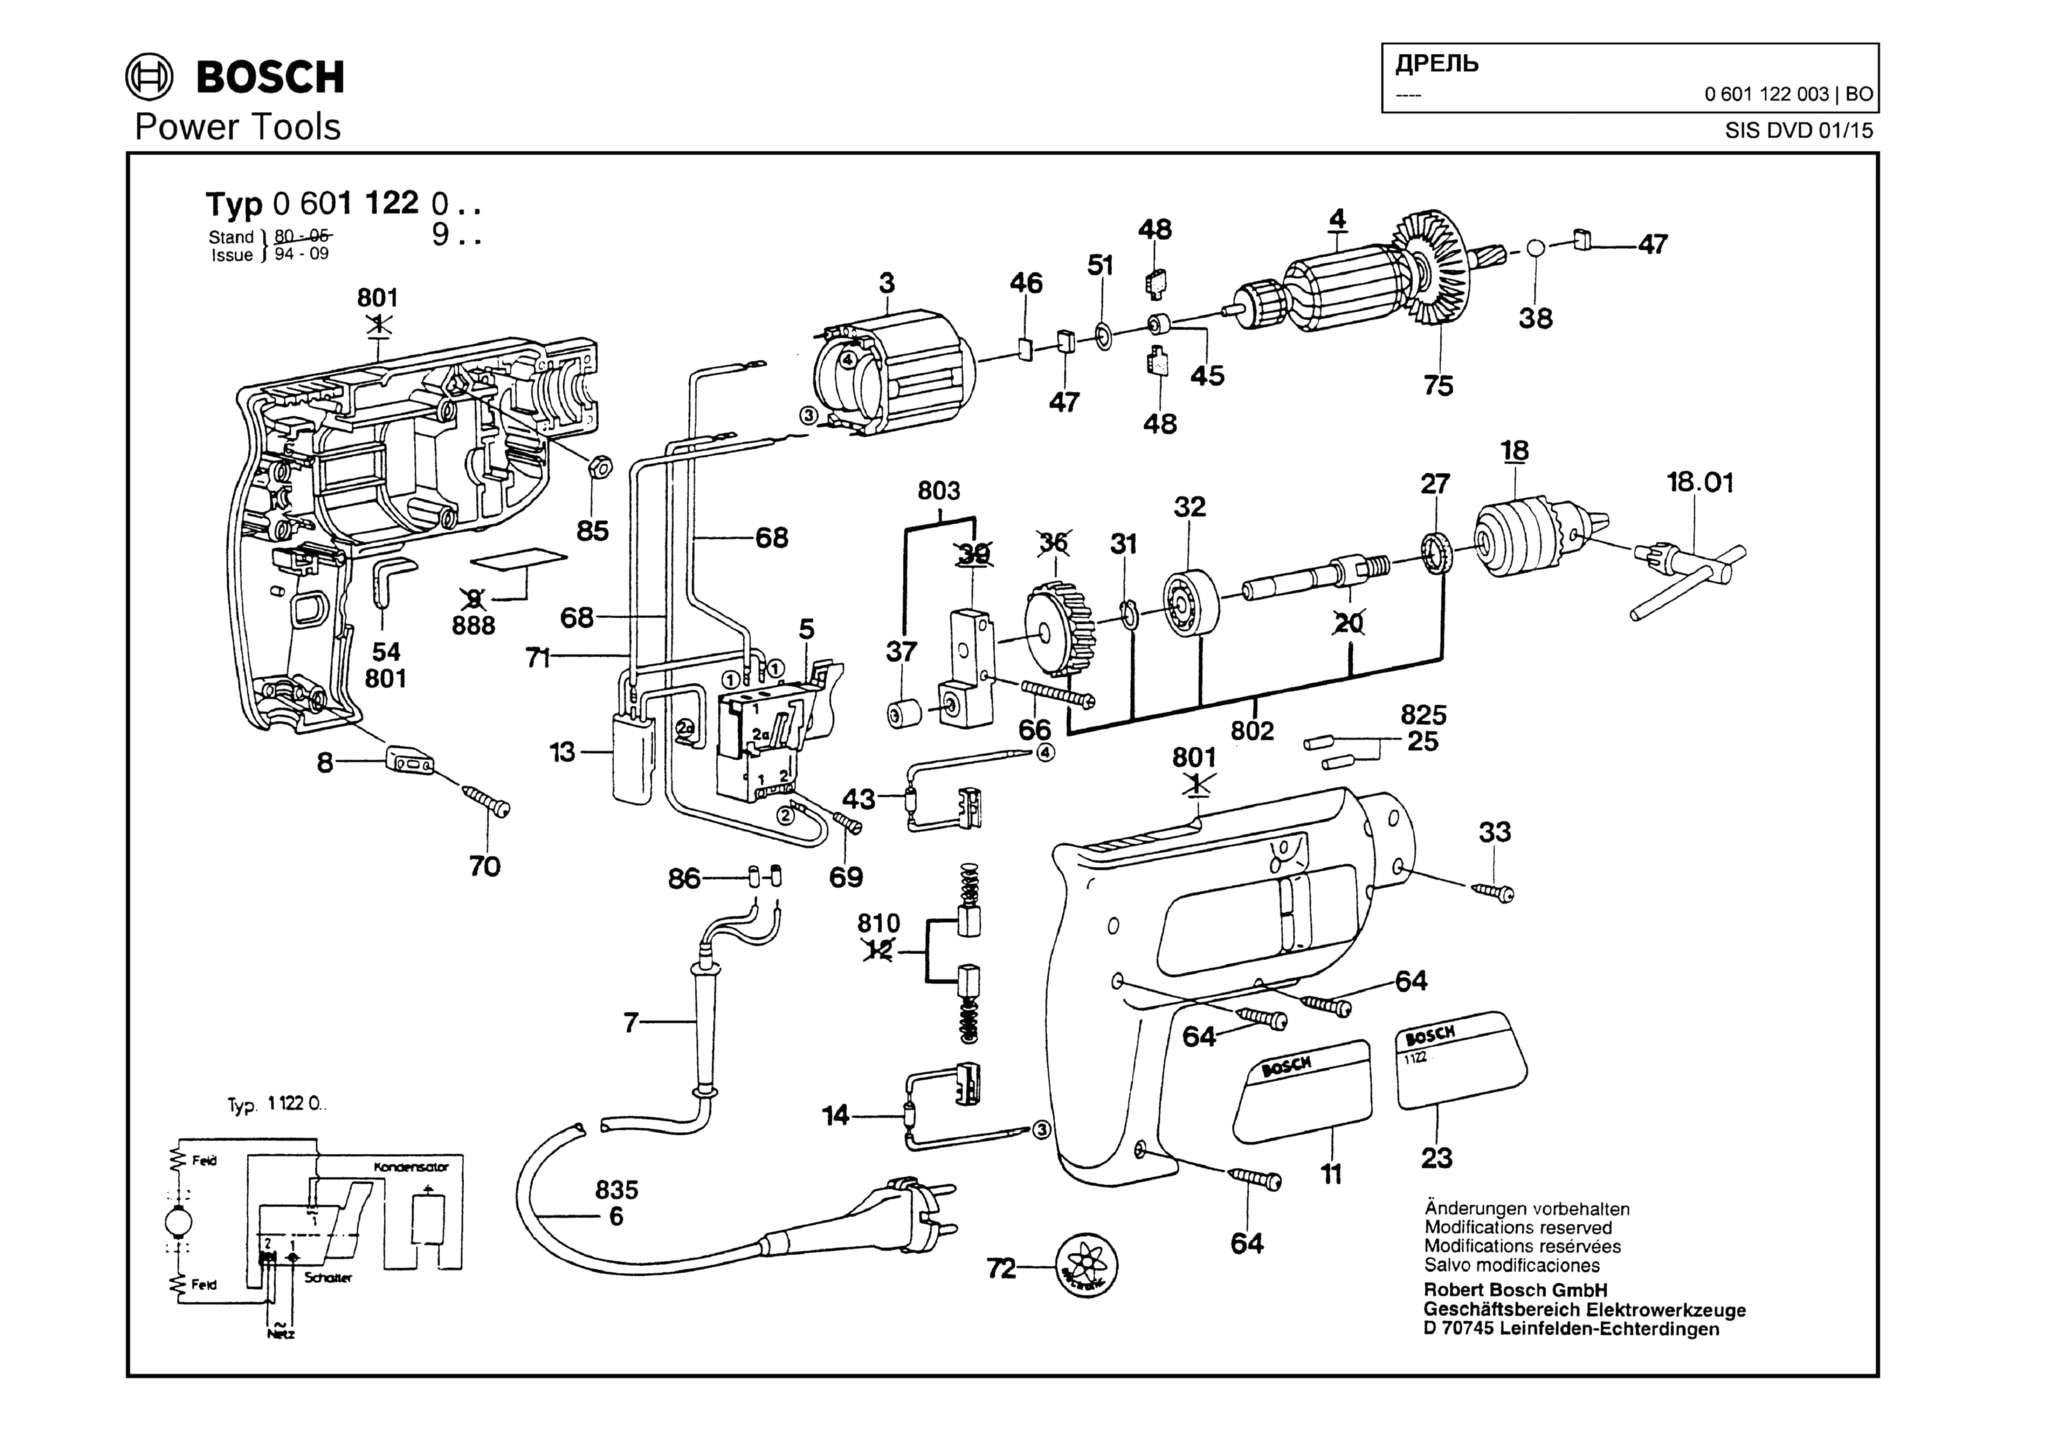 Запчасти, схема и деталировка Bosch (ТИП 0601122003)